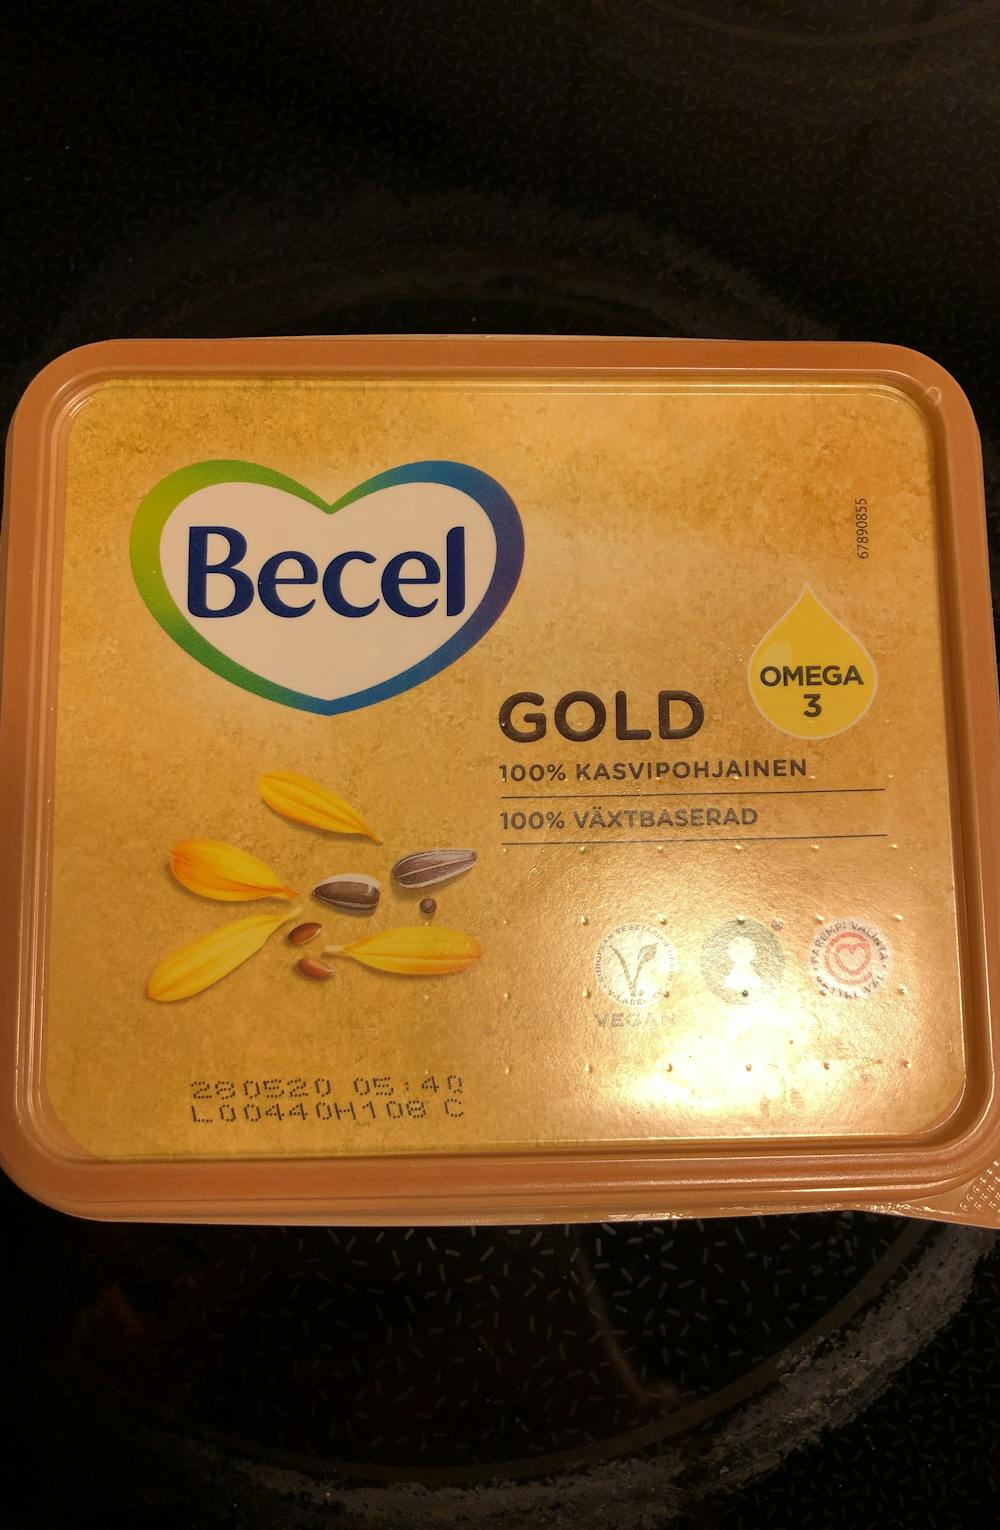 Gold, Becel